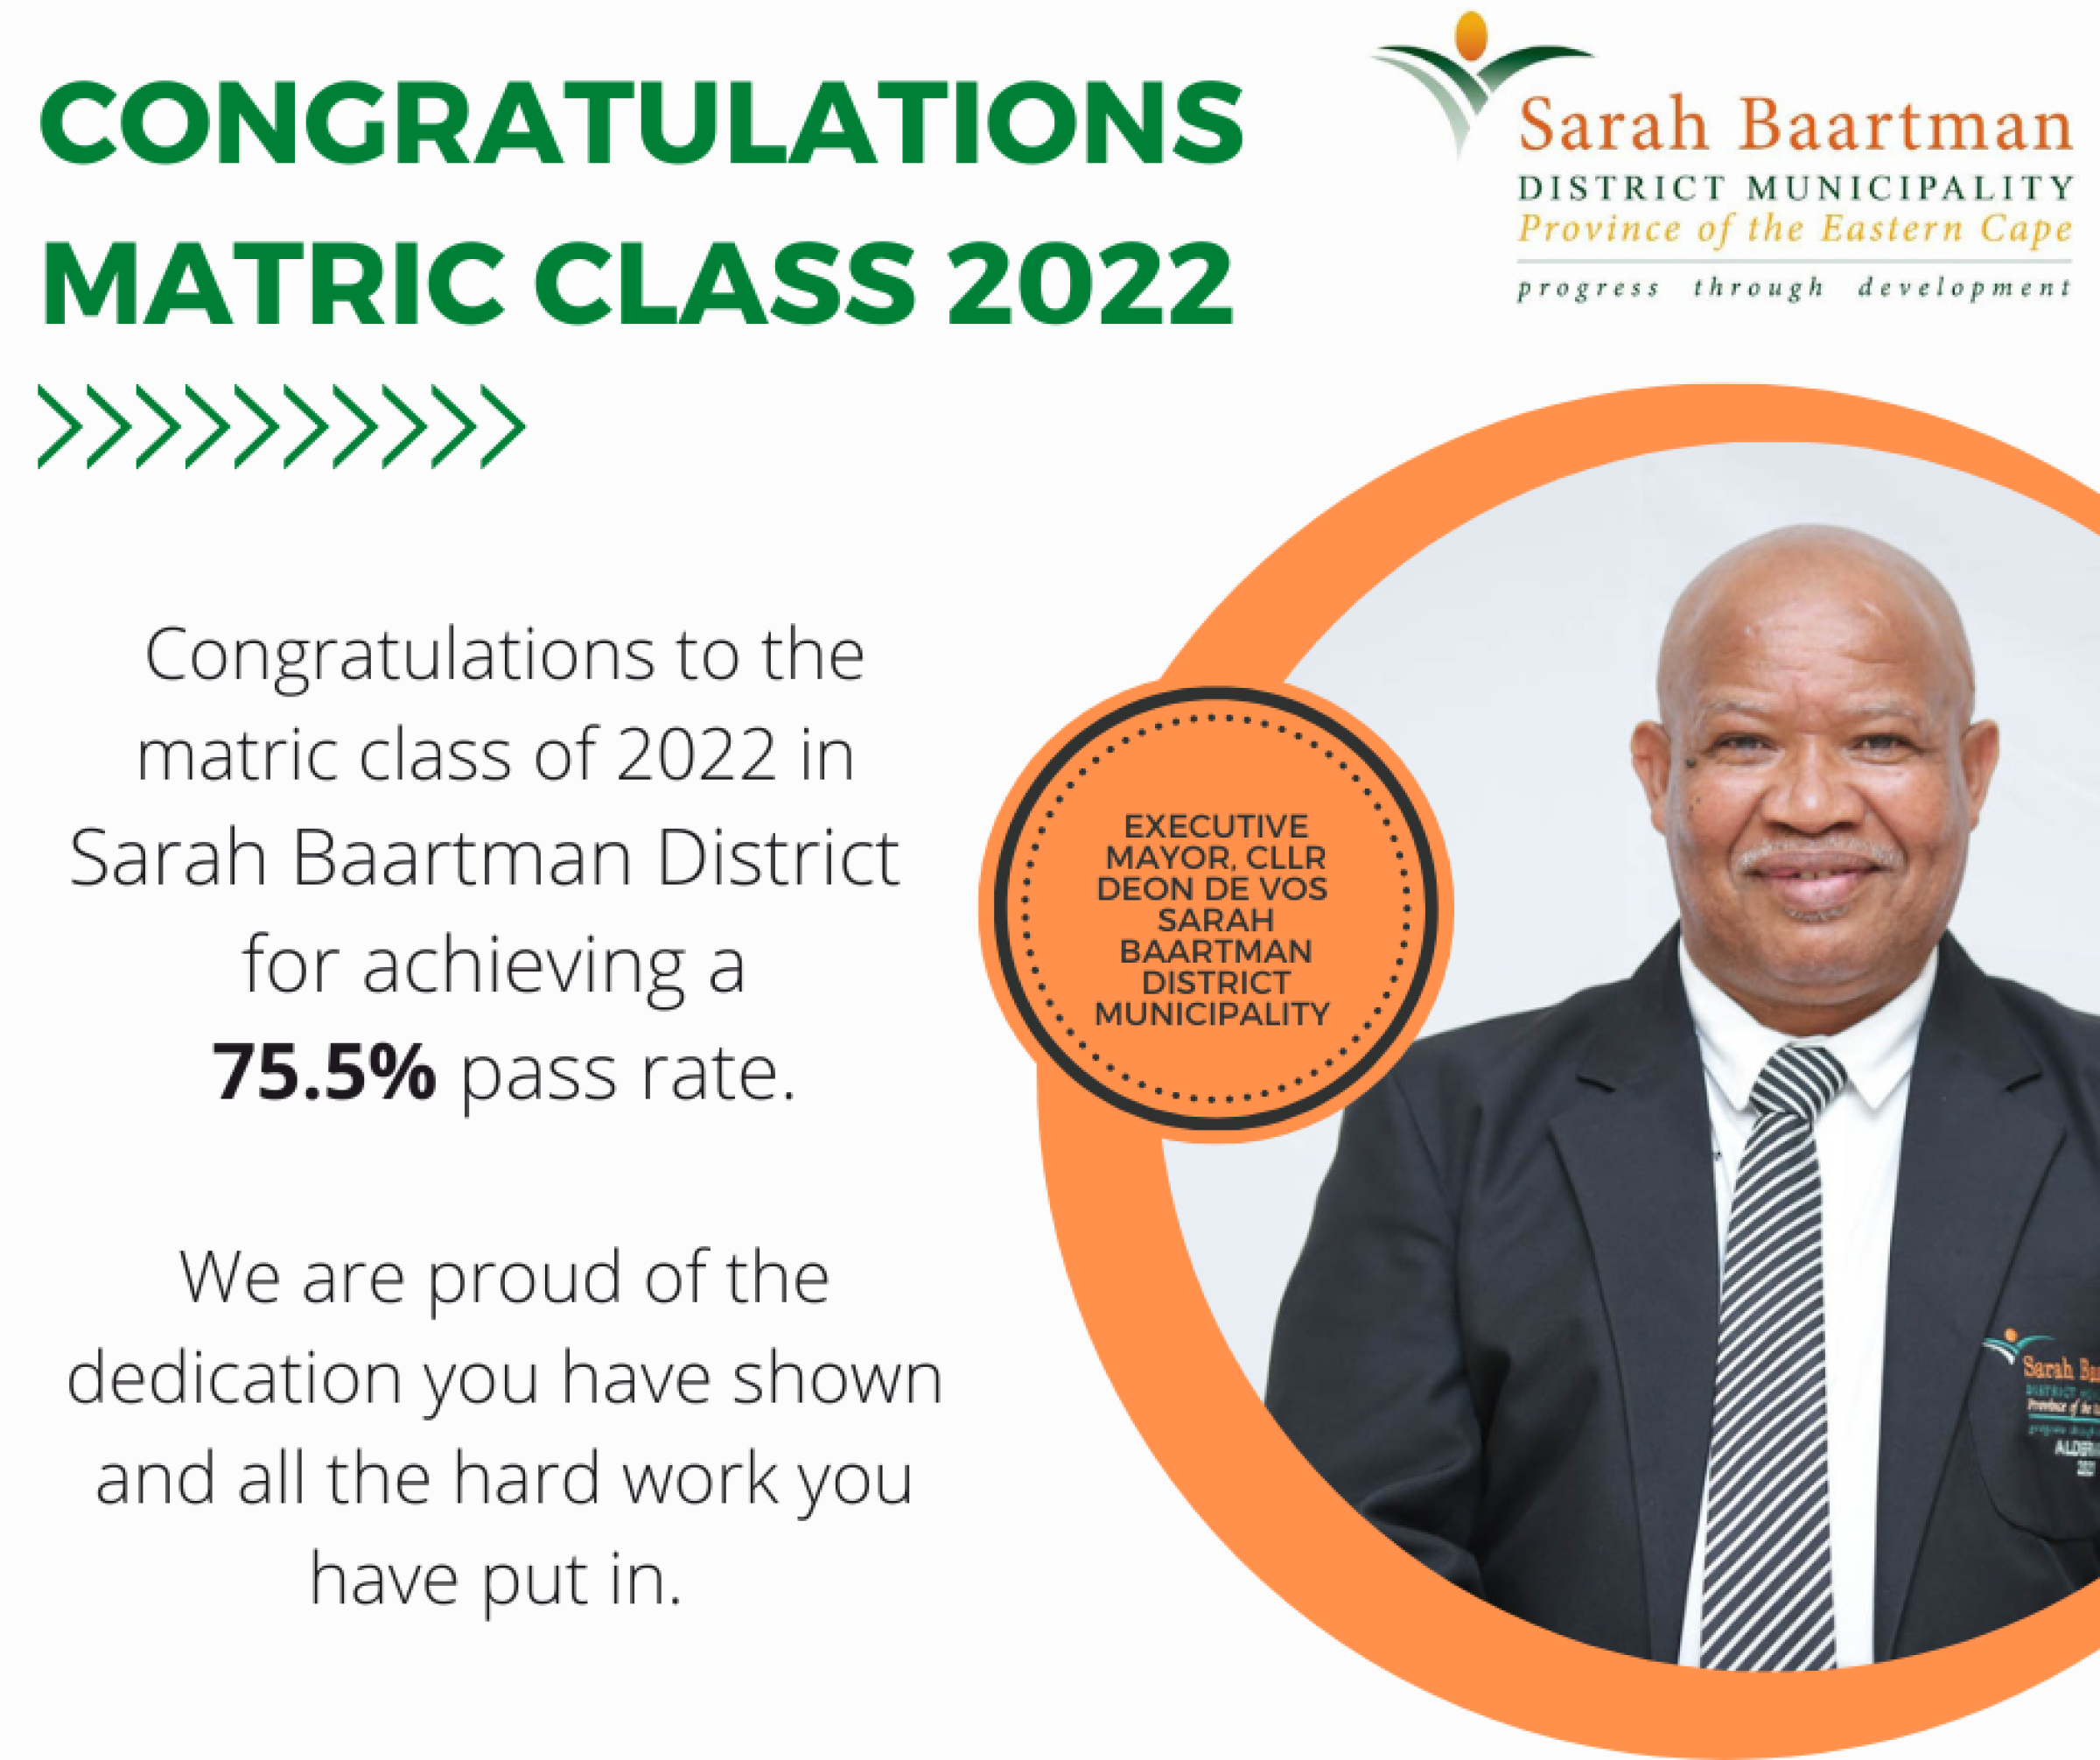 Sarah Baartman District Municipality Executive Mayor Congratulates Matric Class of 2022